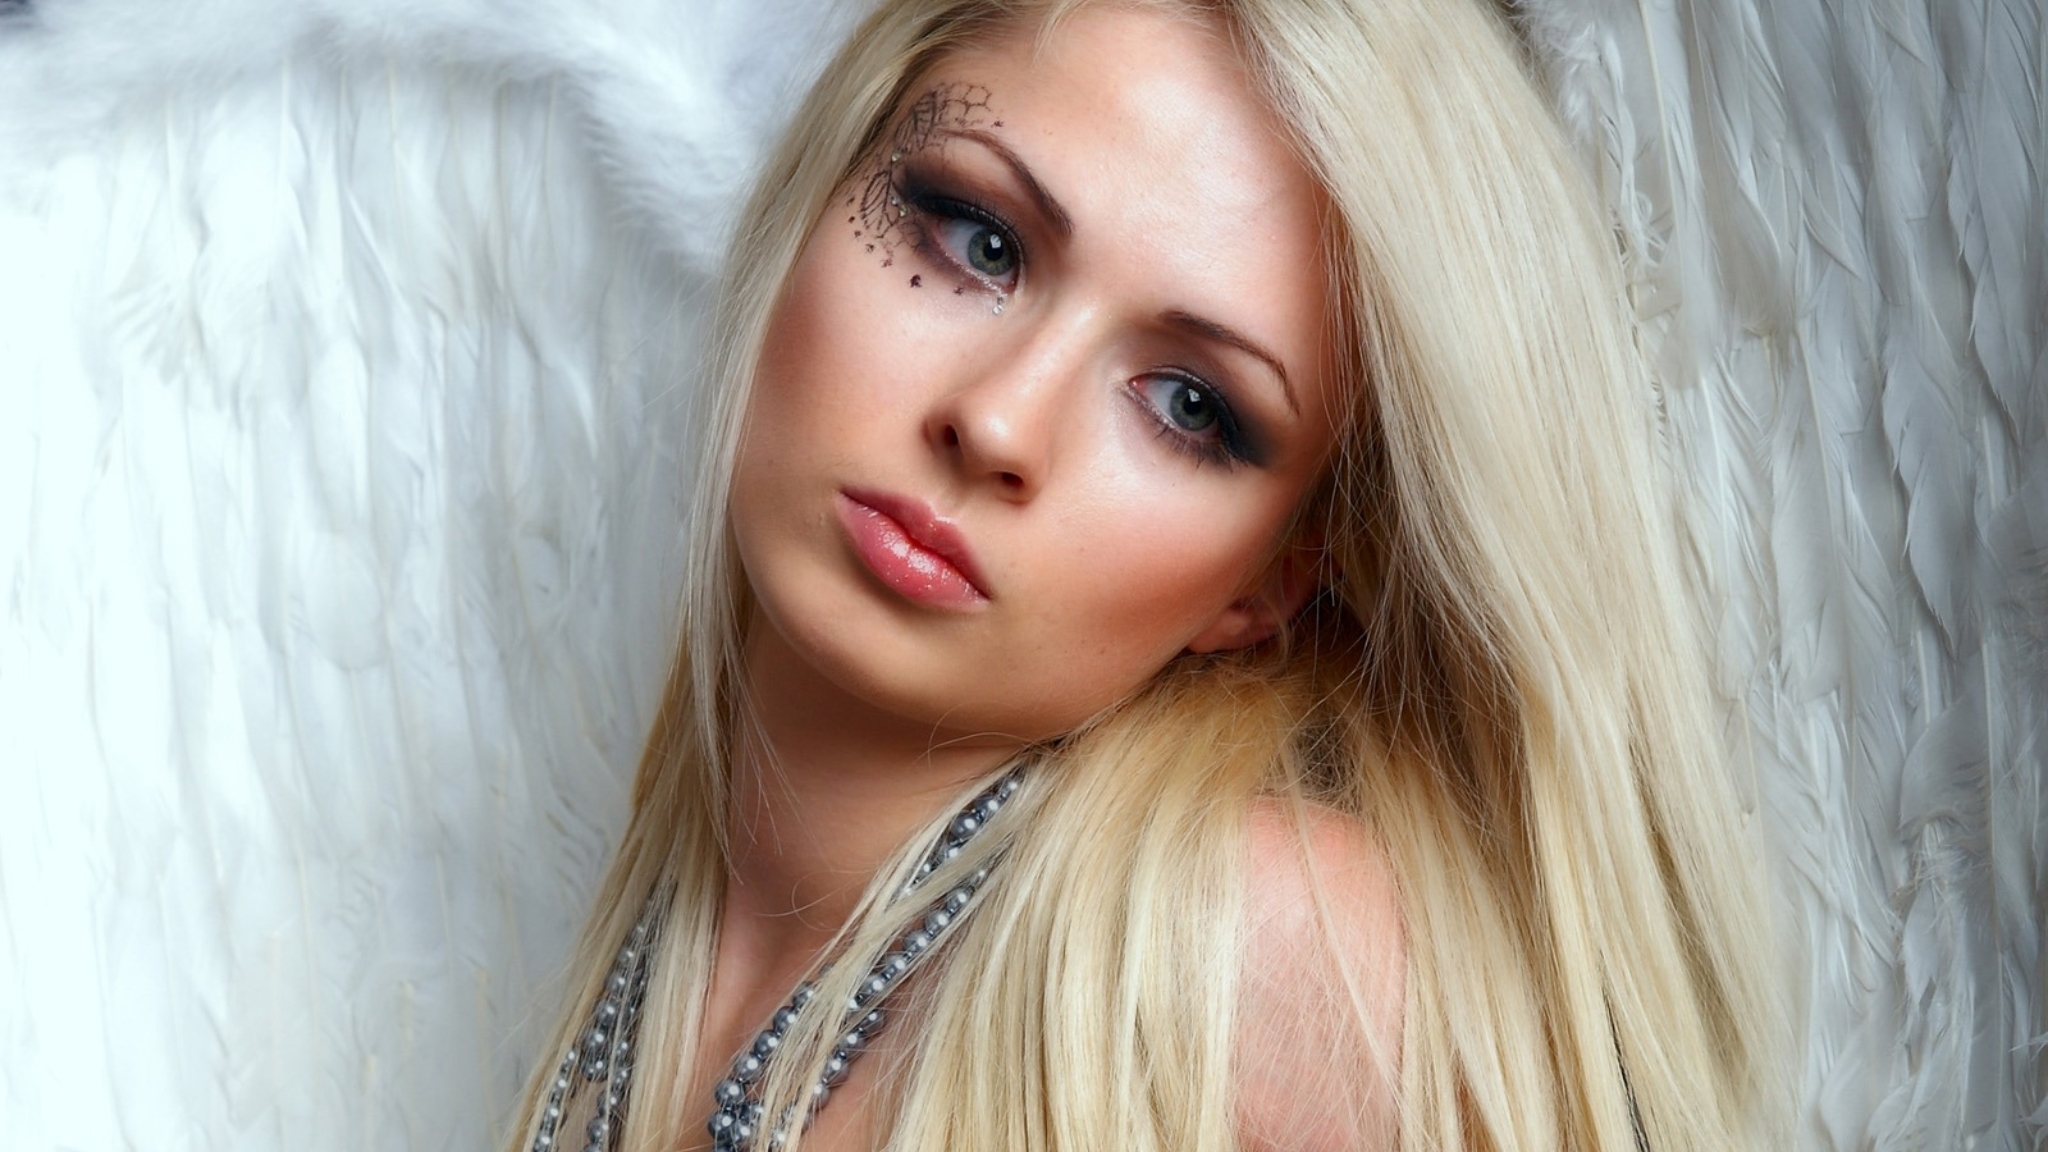 Image: Girl, look, eyes, blonde hair, blonde, wings, beads, drawing, feathers